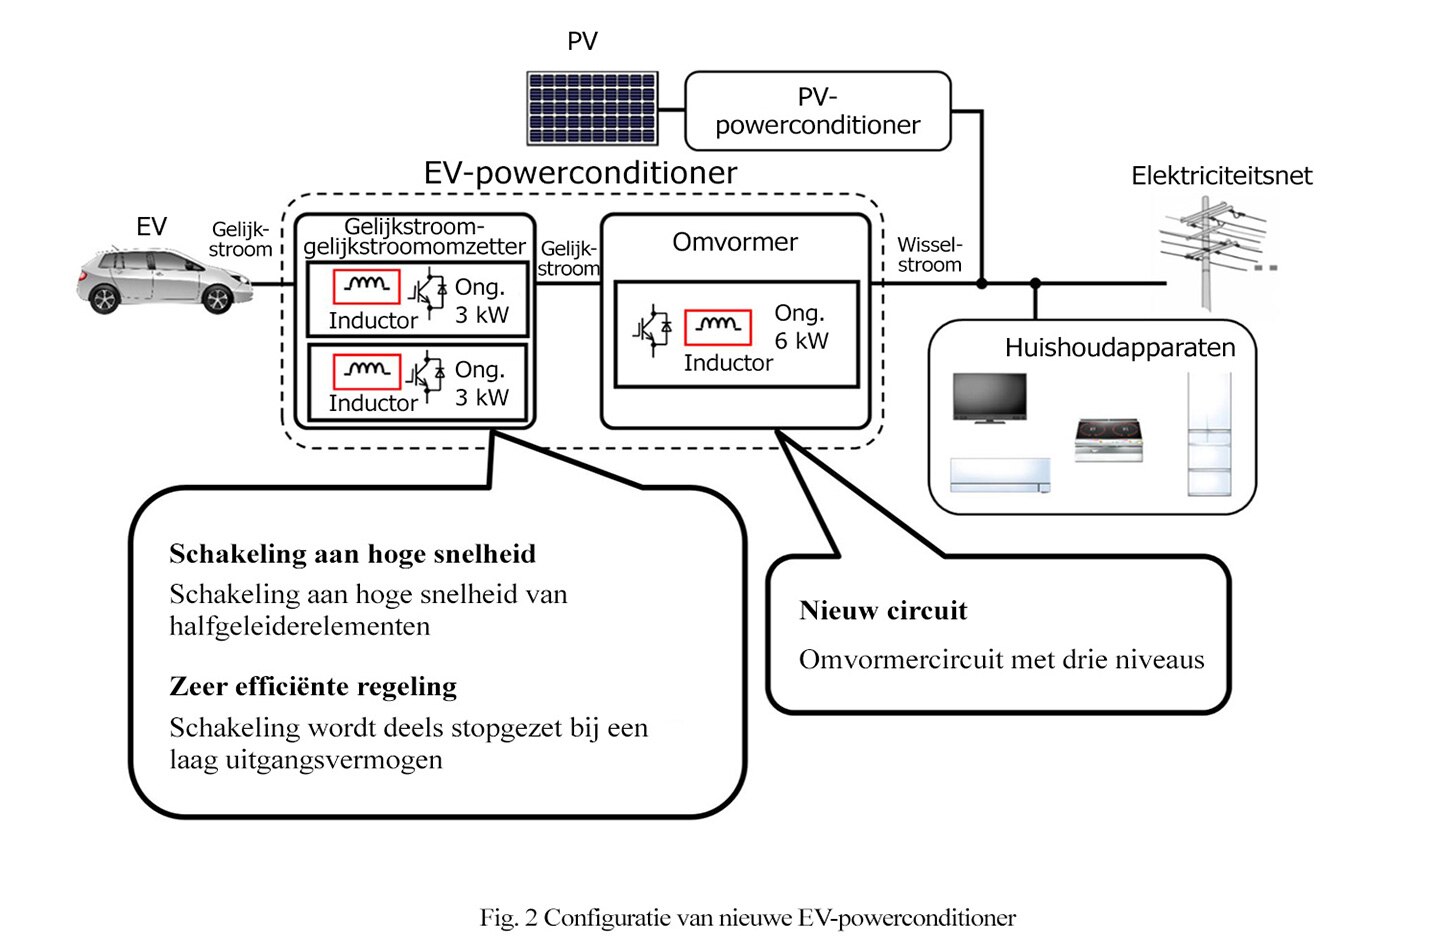 Fig. 2 Configuratie van nieuwe EV-powerconditioner